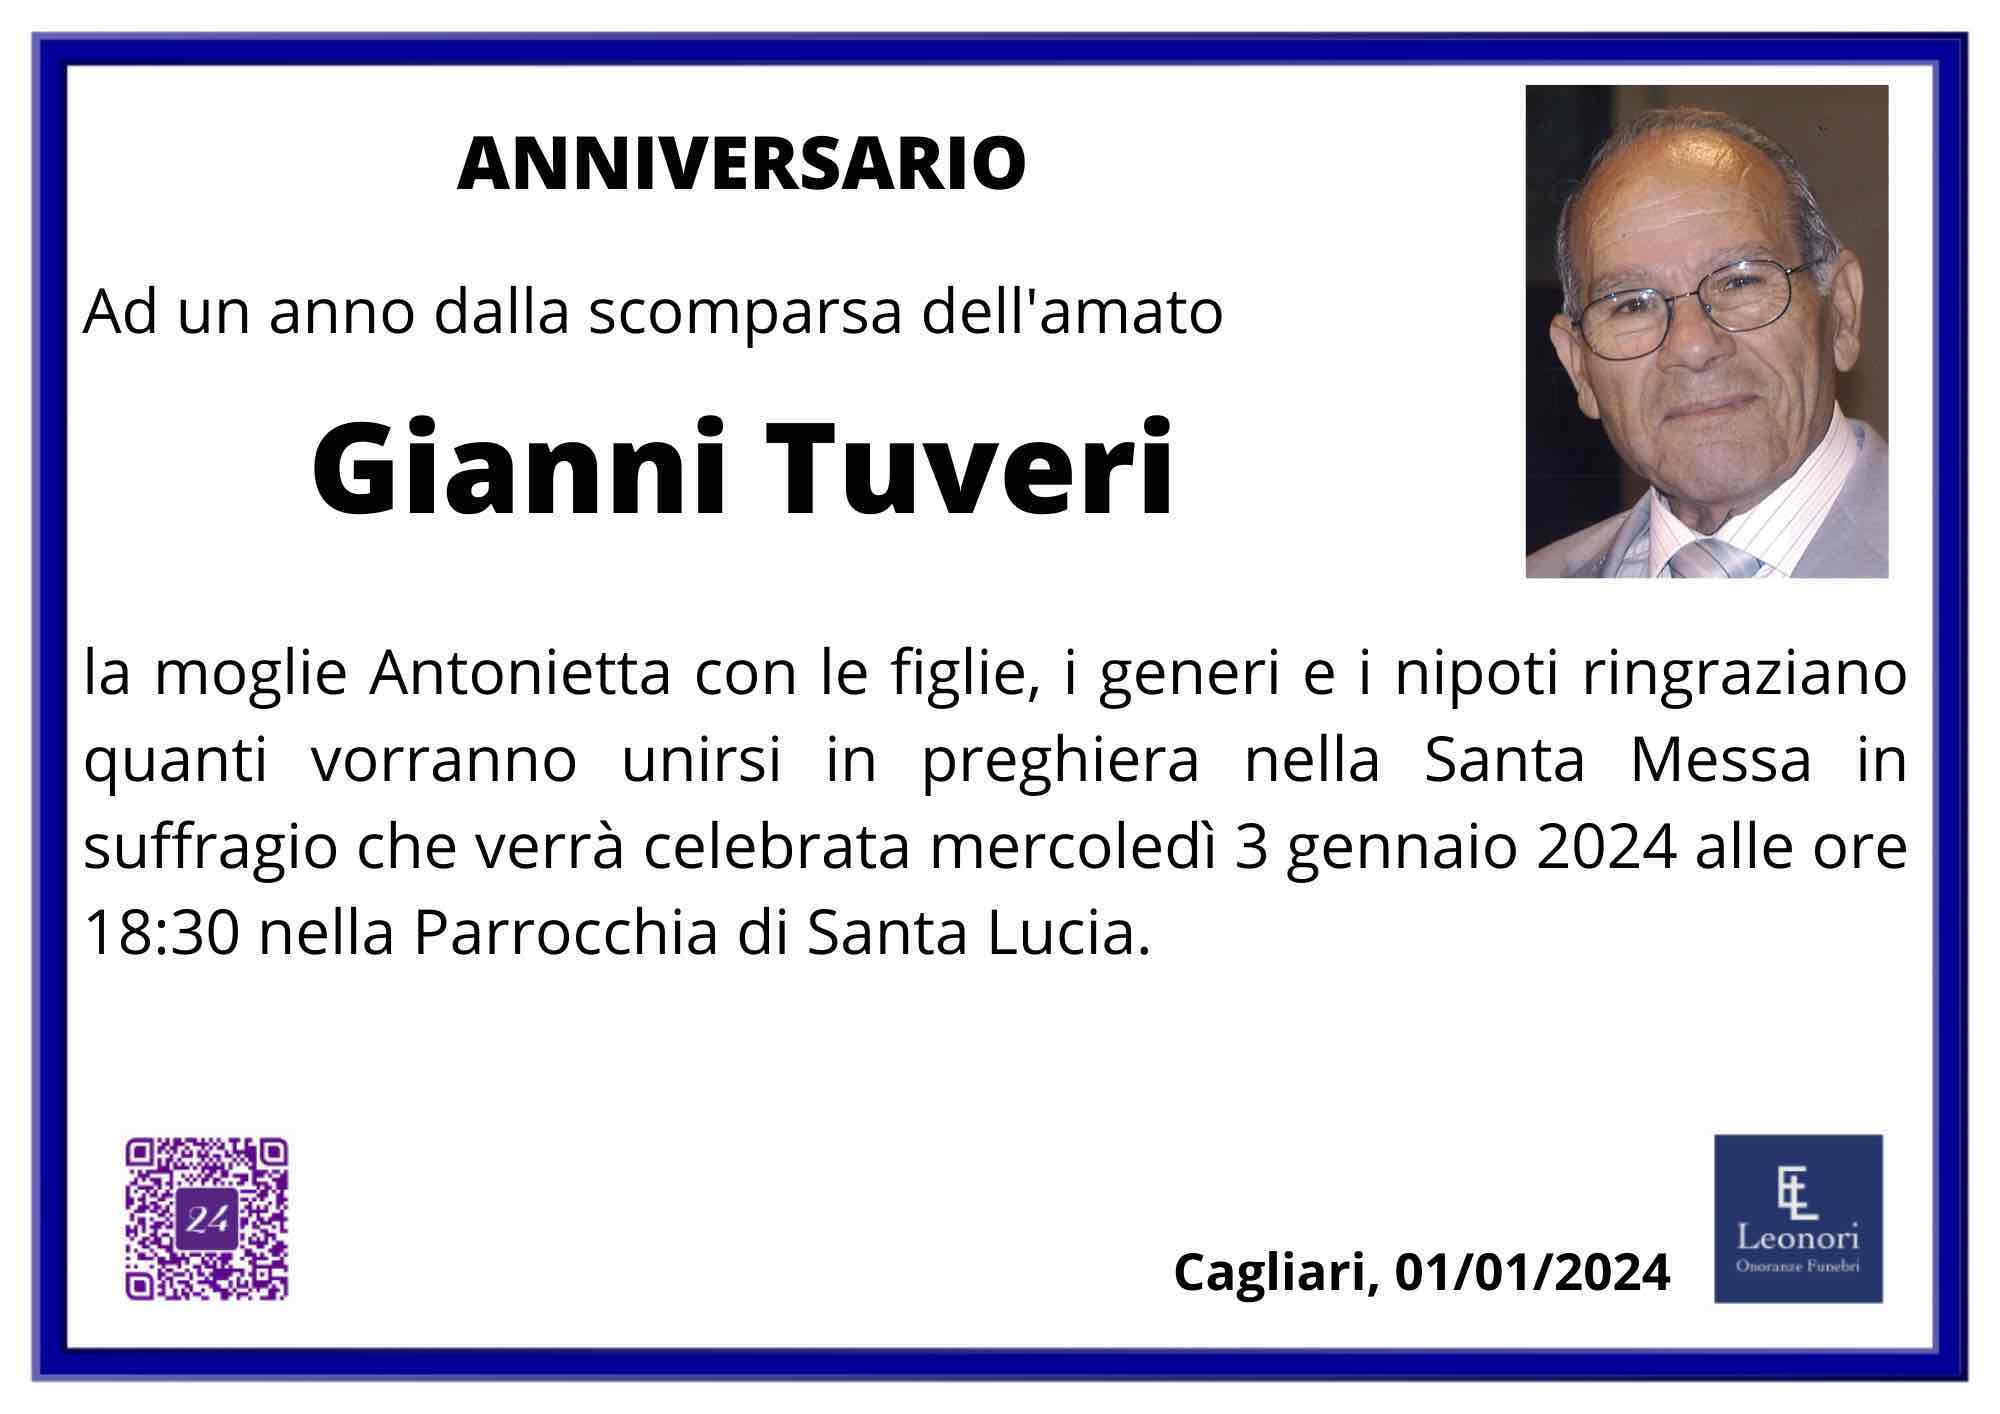 Gianni Tuveri